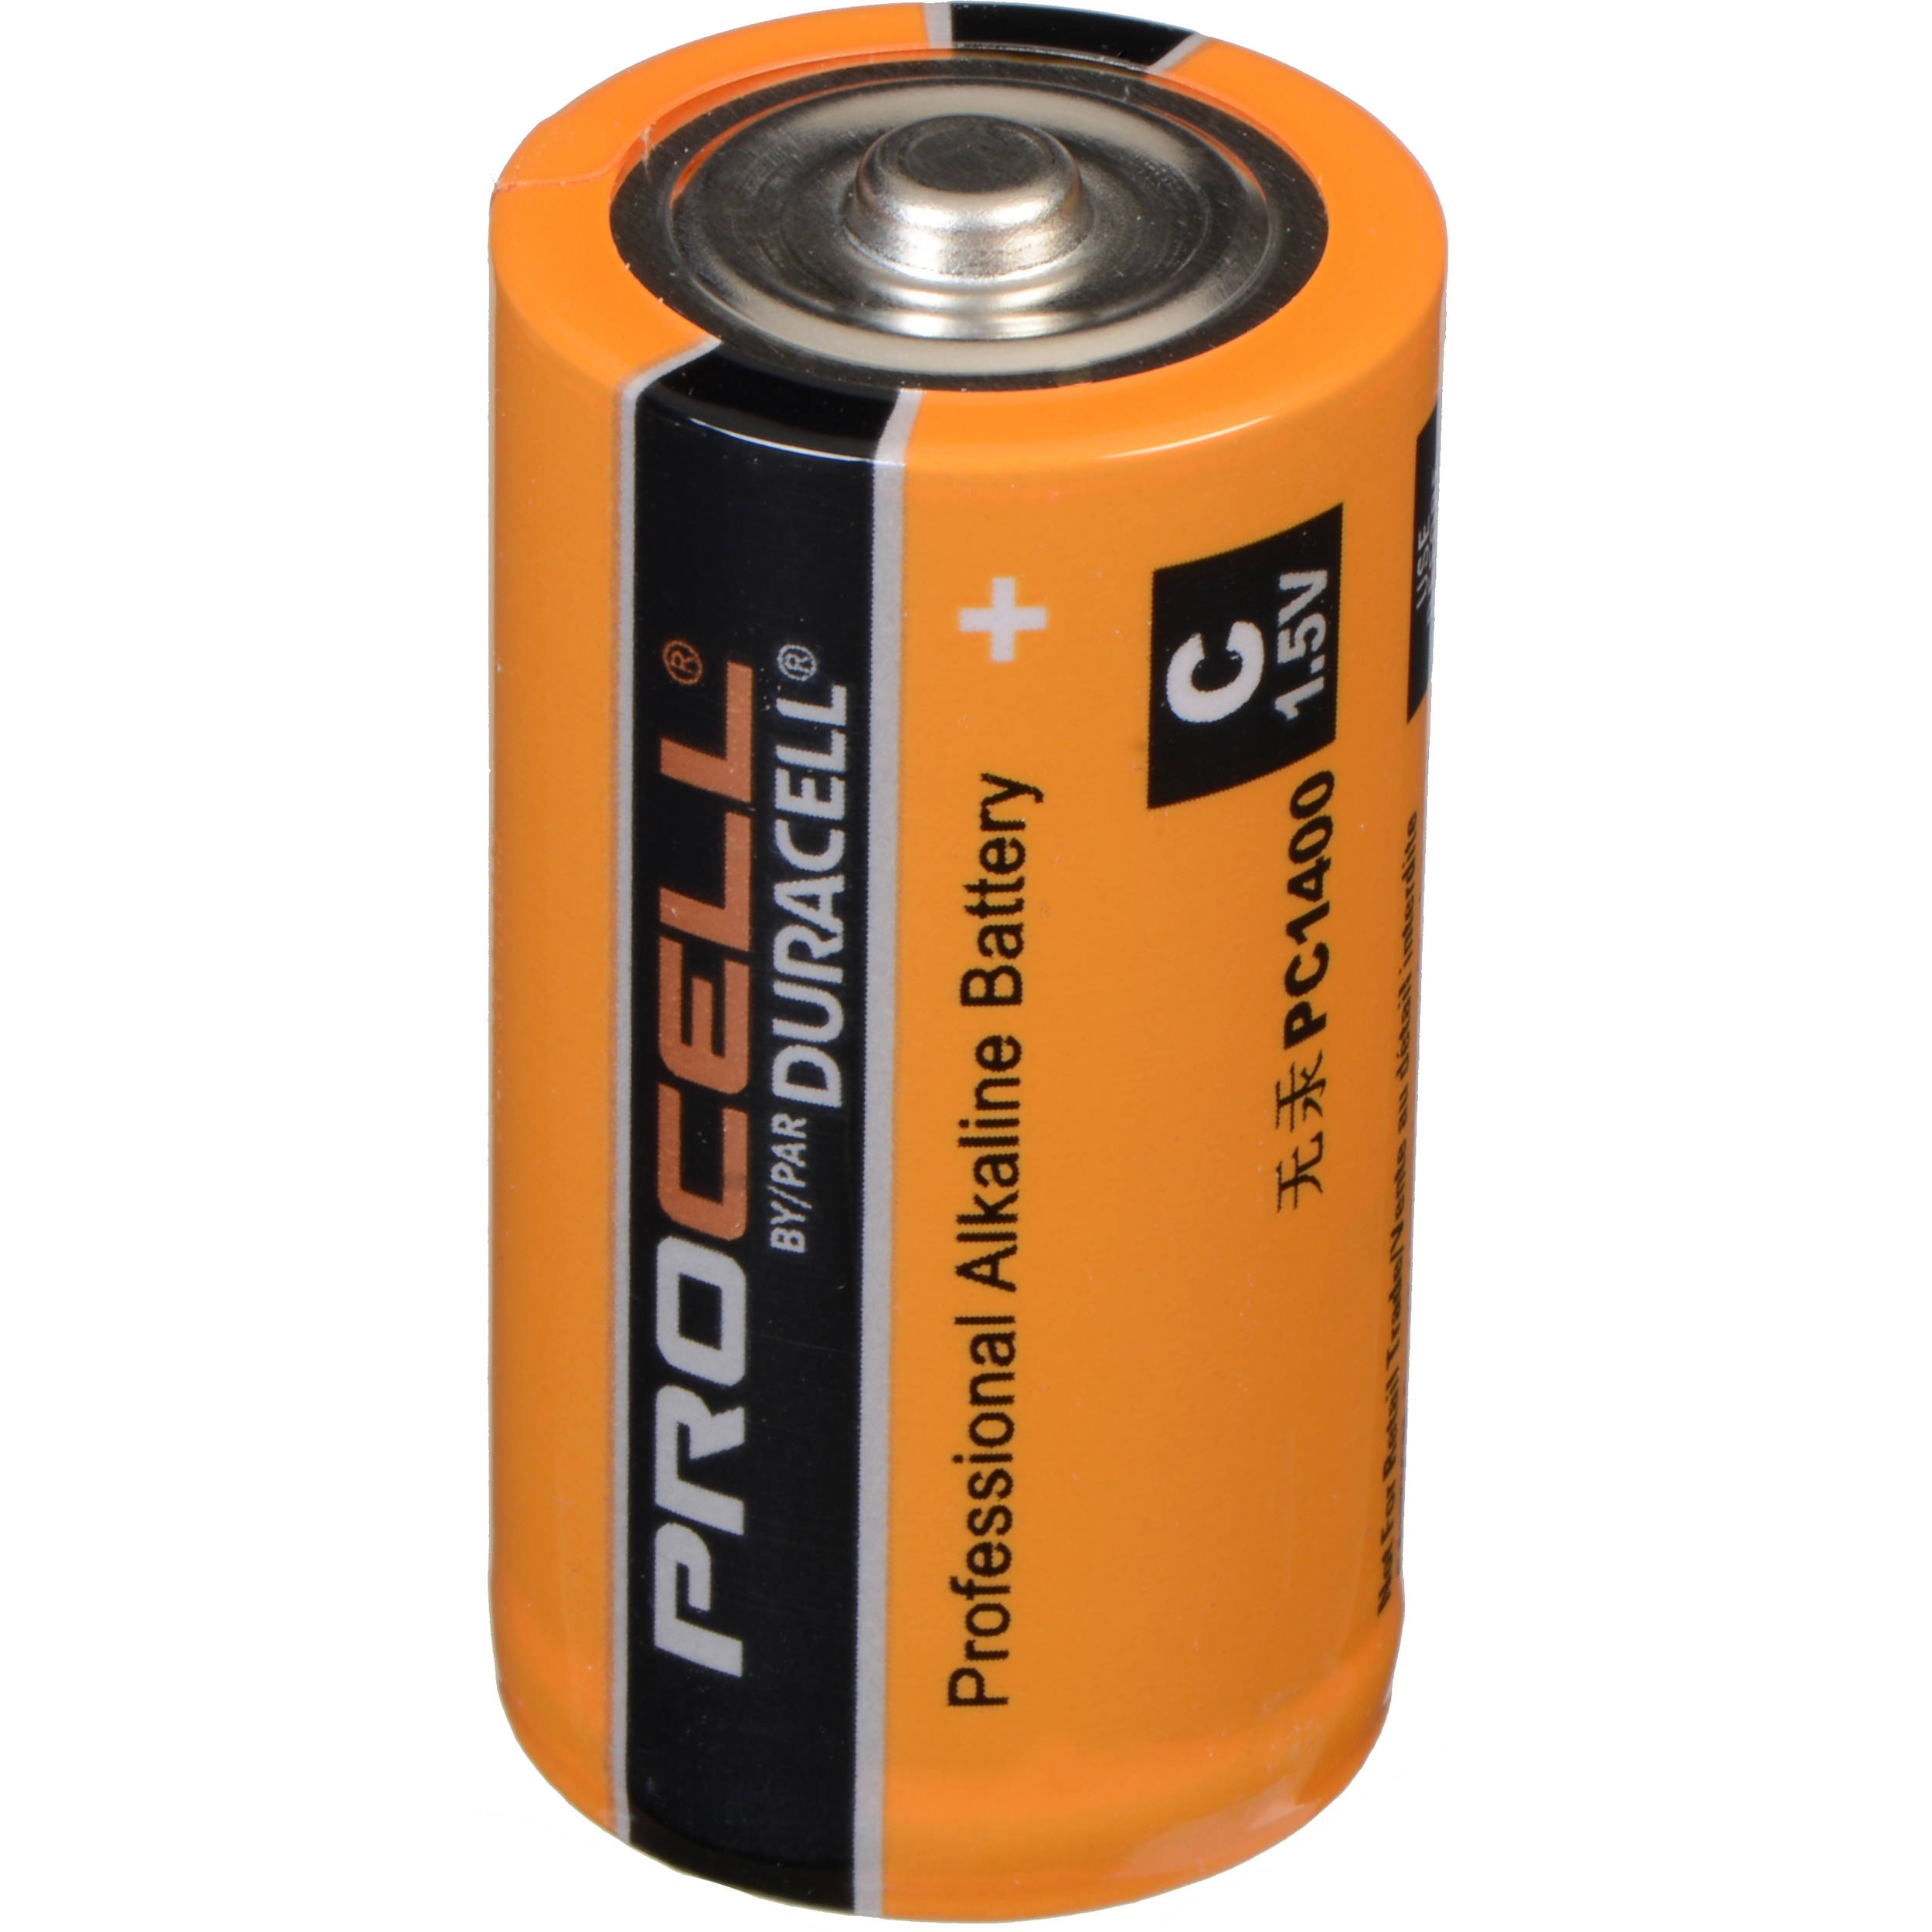 1.5 v battery